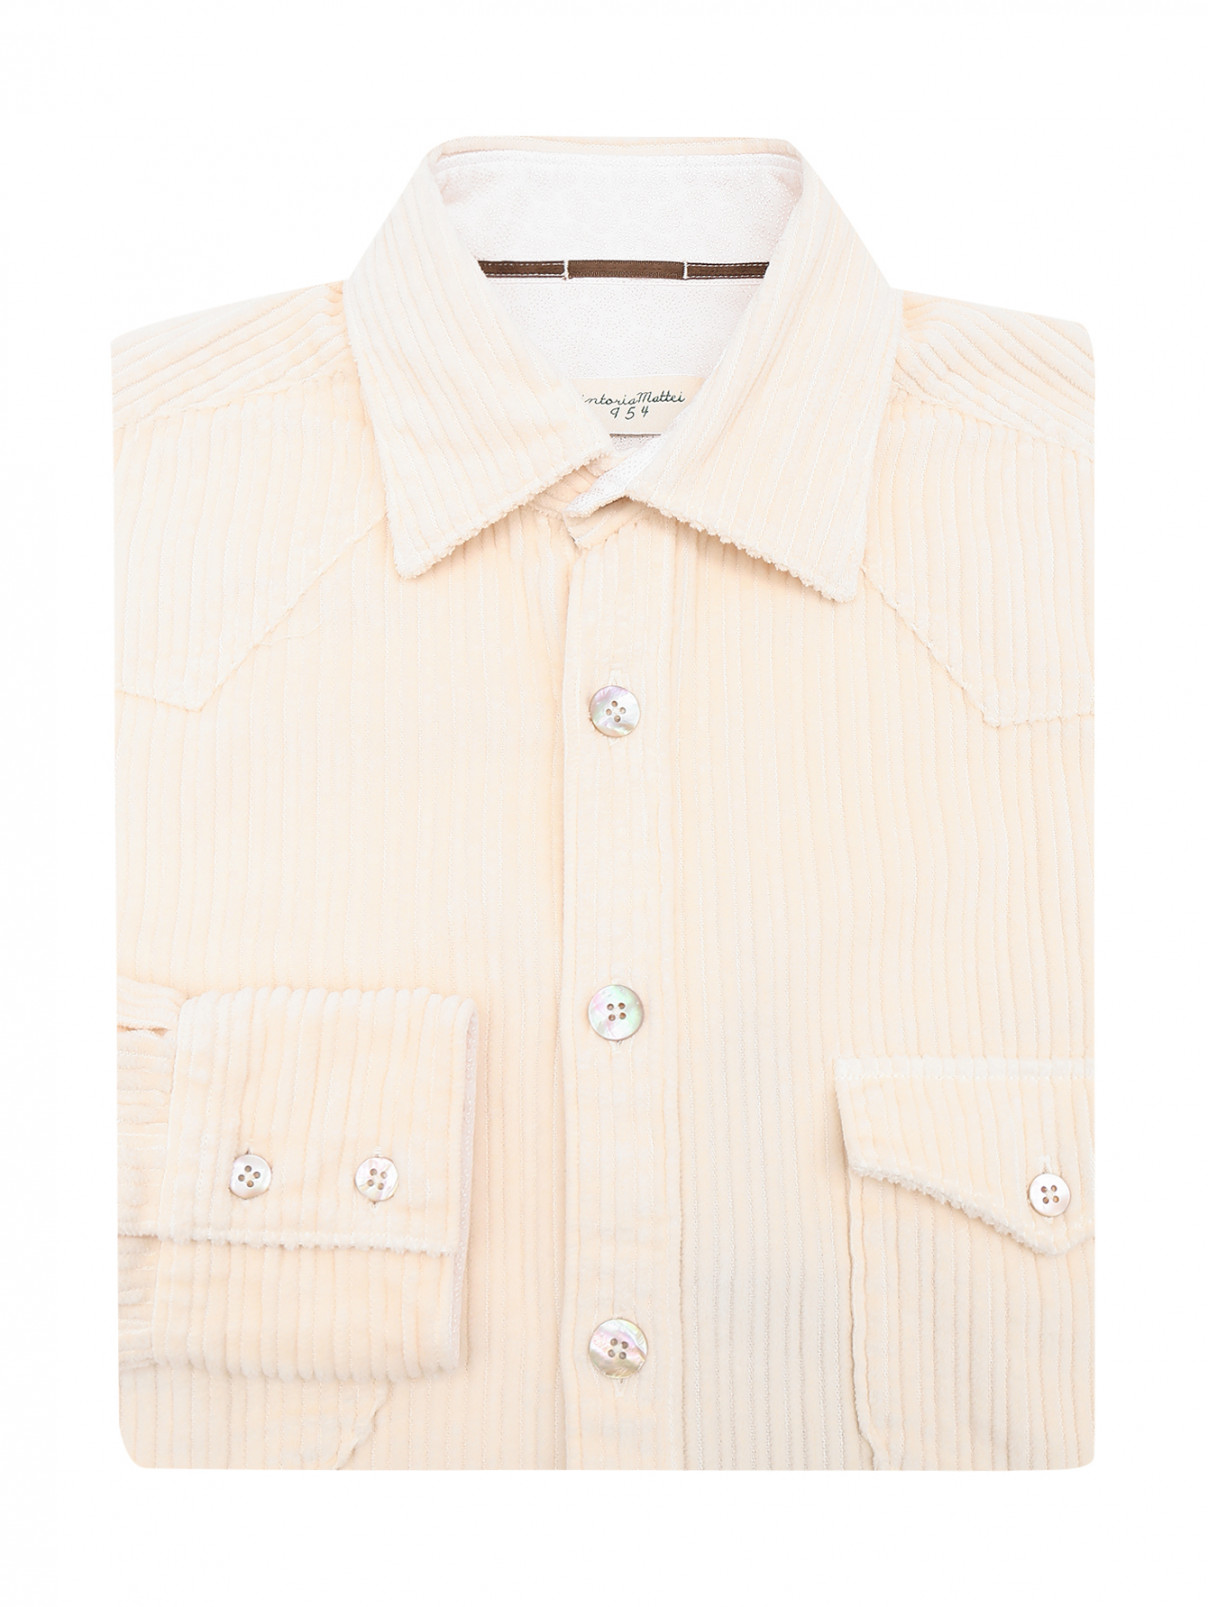 Вельветовая рубашка с накладными карманами Tintoria Mattei  –  Общий вид  – Цвет:  Белый